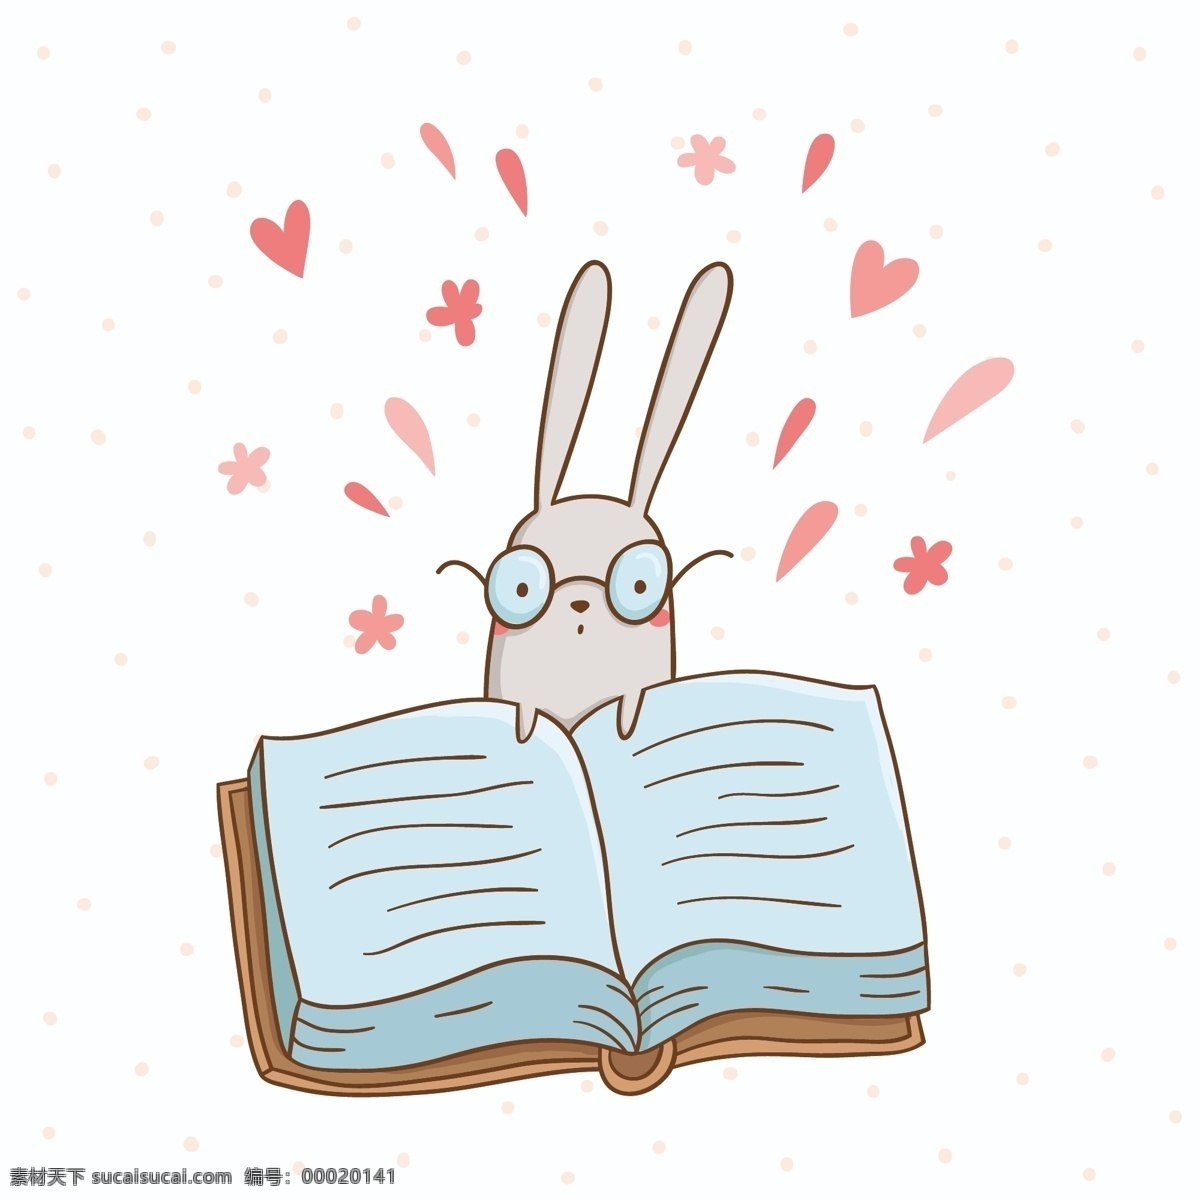 可爱 兔子 一本 大书 矢量 插图 兔子背景素材 广告设计模板 ai素材 书本素材 爱心 眼镜 学习 卡通